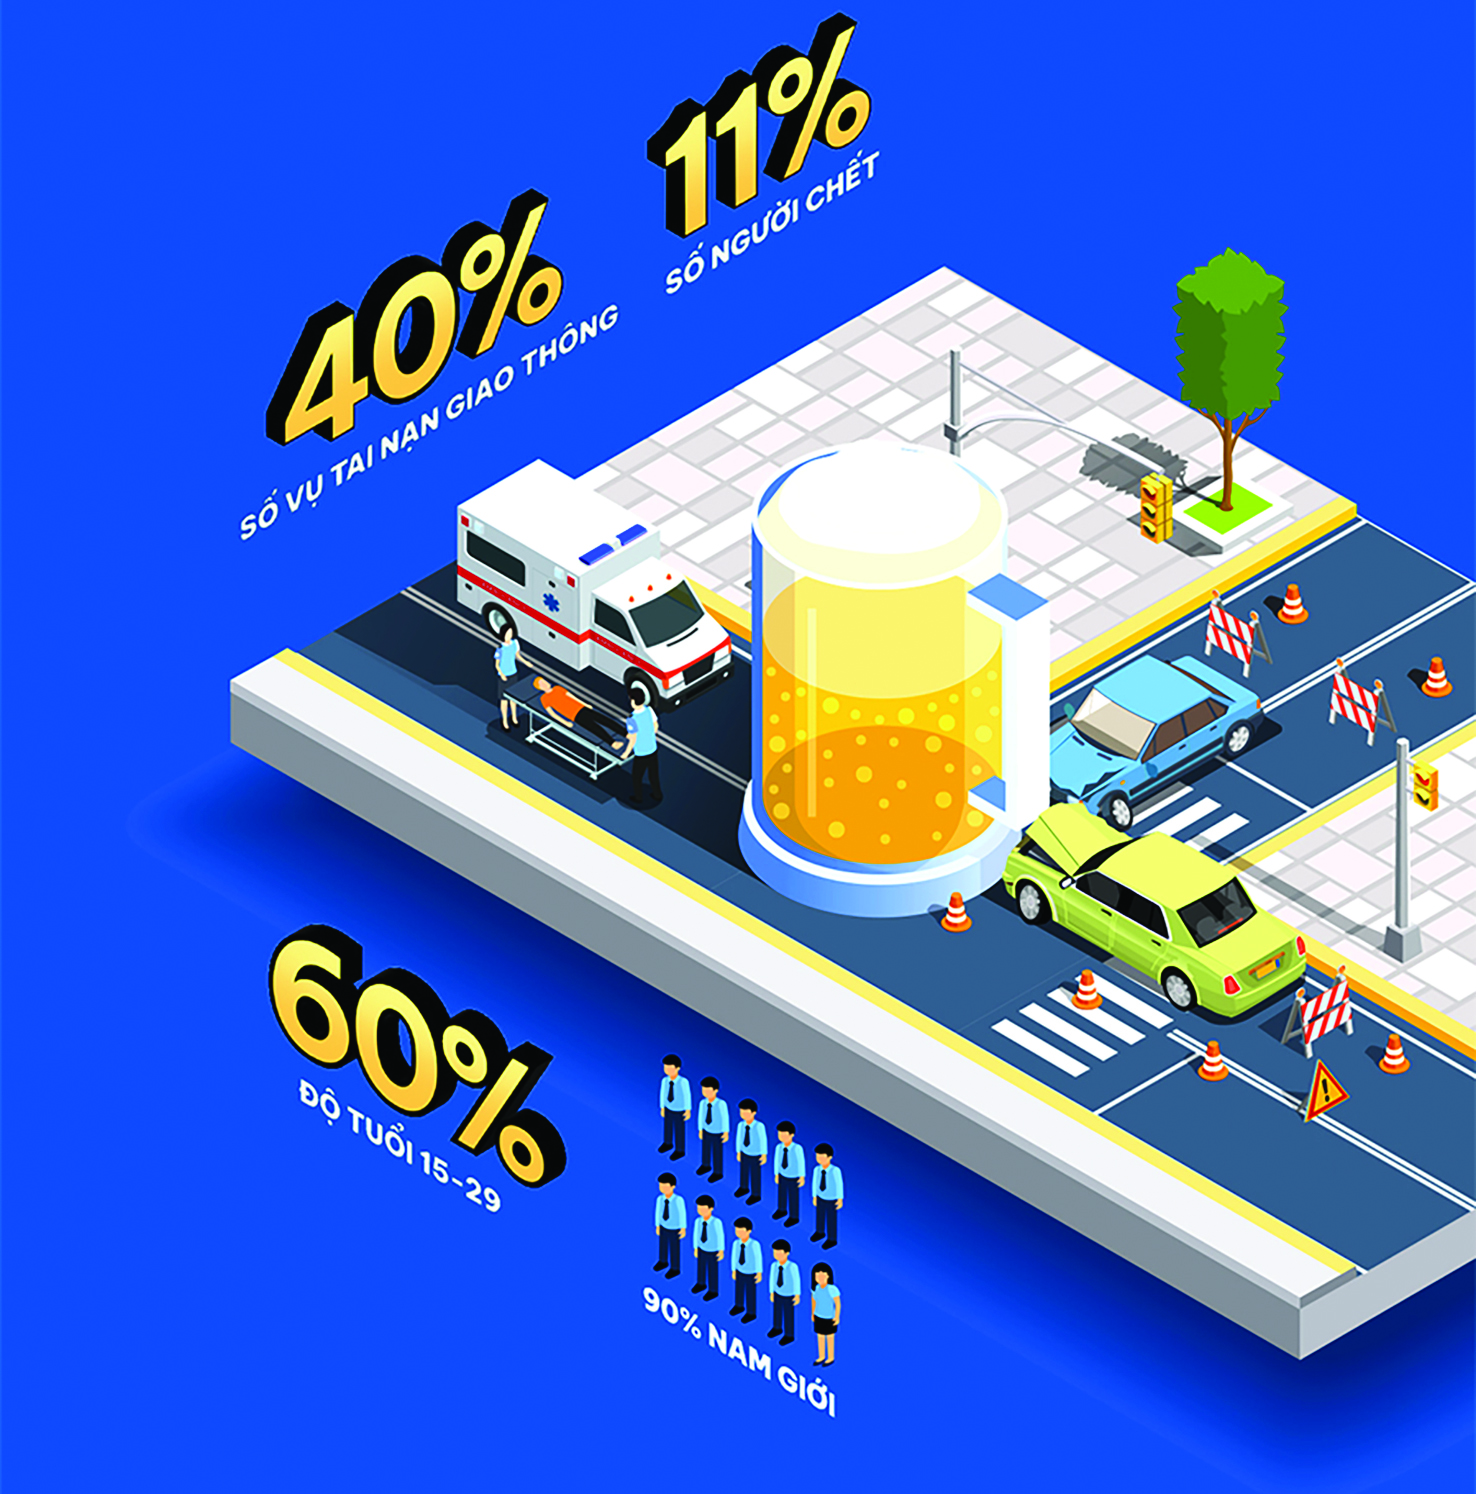  Hình ảnh trong infographic “Đã cầm ly, để be cầm lái